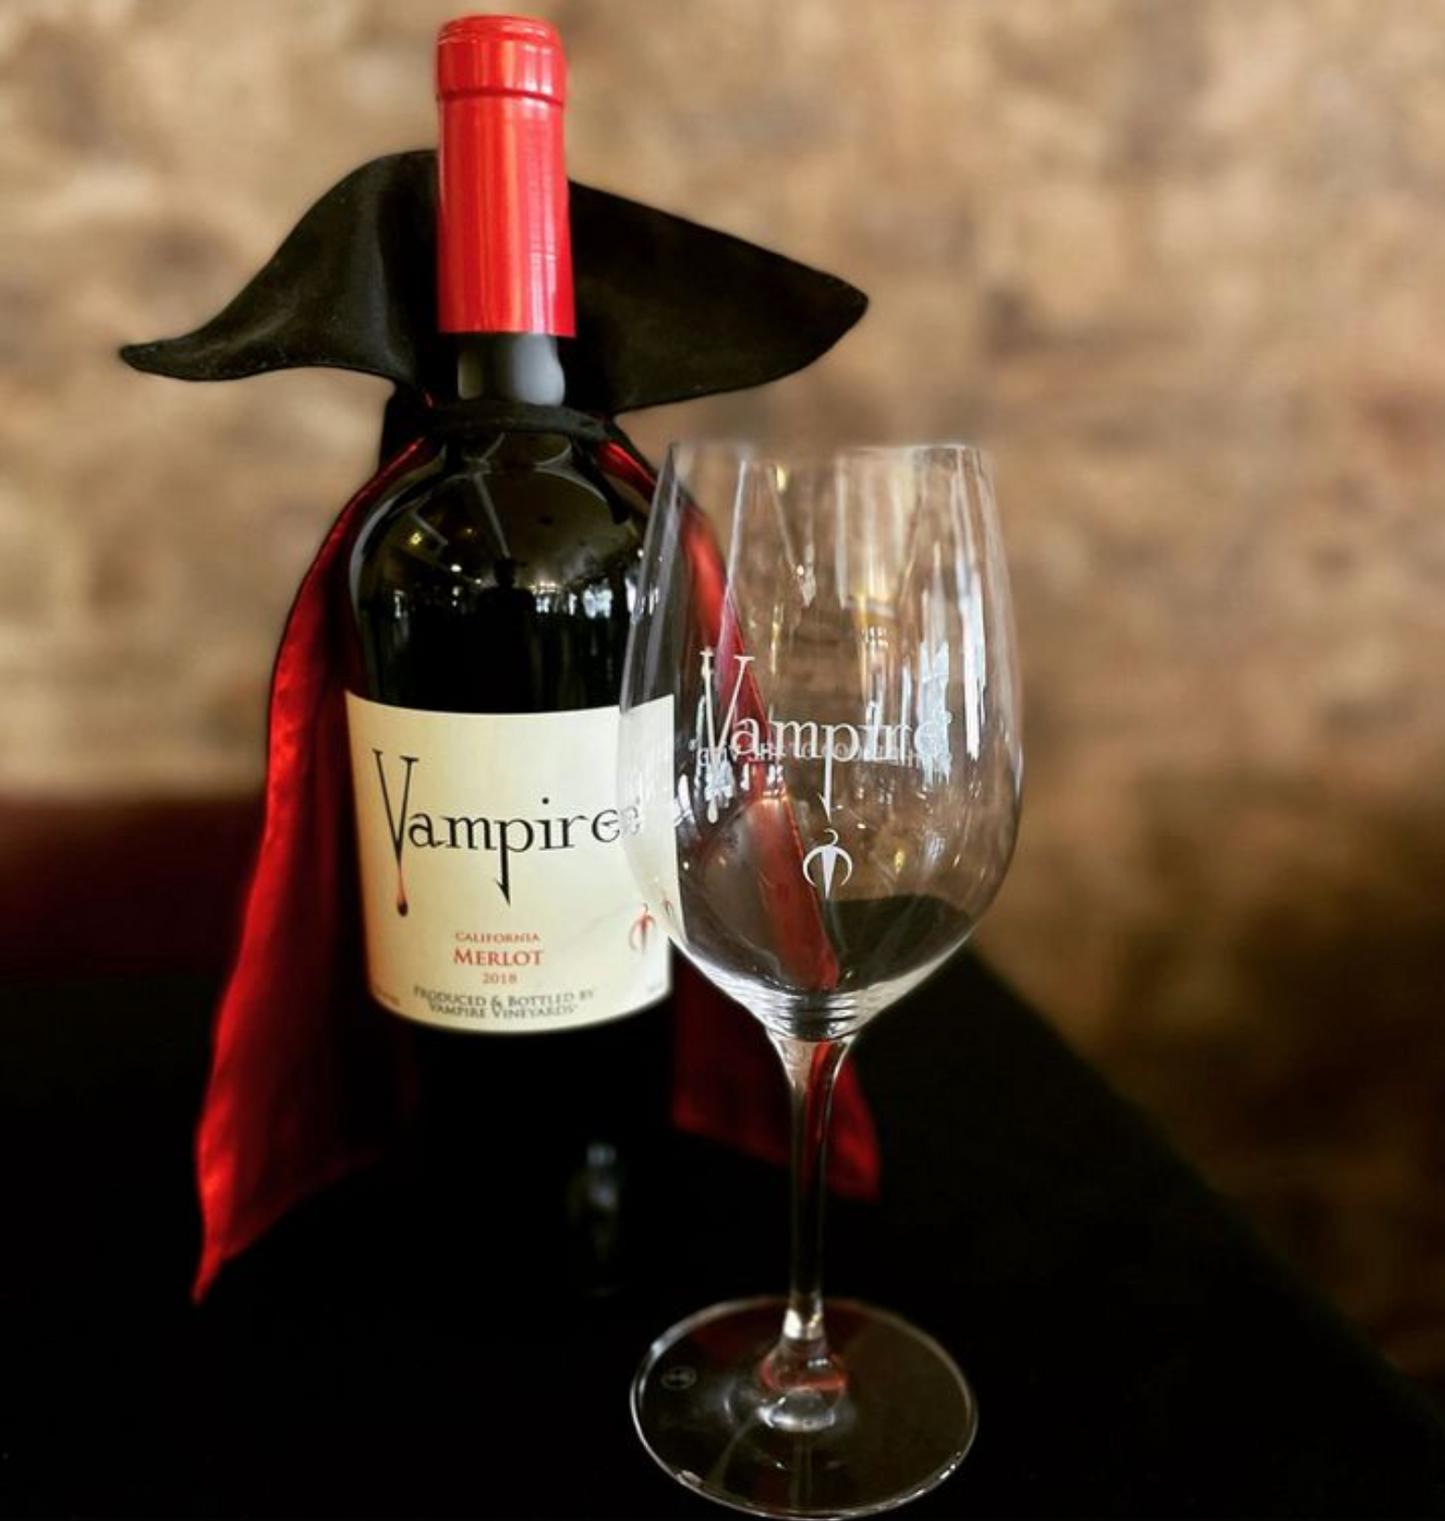 VAMPIRE® MERLOT WITH VAMPIRE WINE CAPE